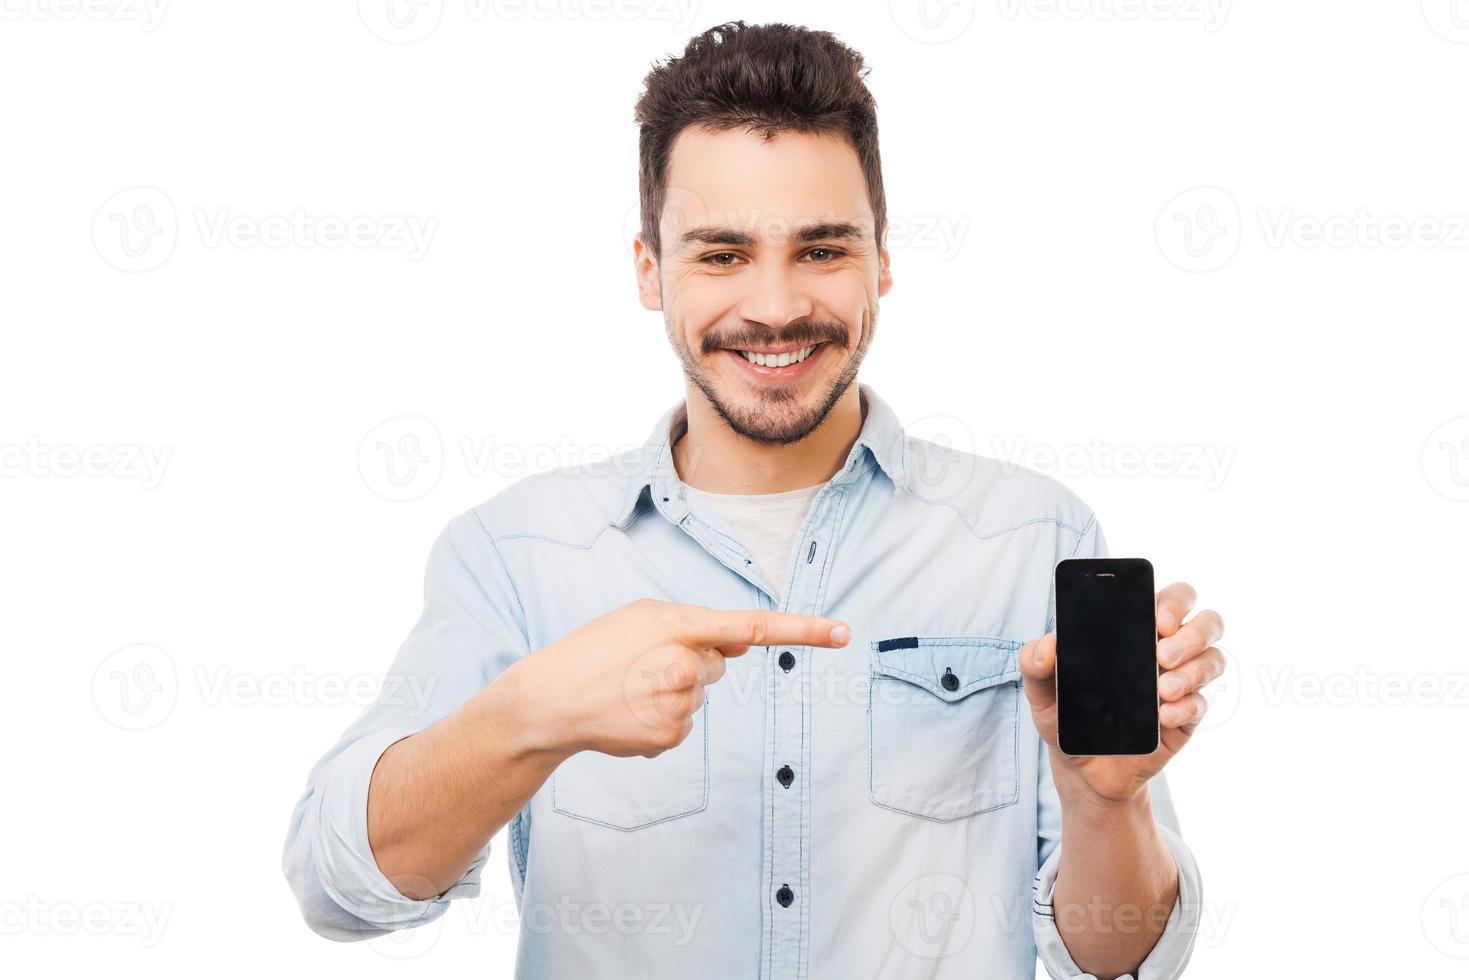 copie o espaço em seu telefone. jovem alegre mostrando o celular e sorrindo em pé contra um fundo branco foto